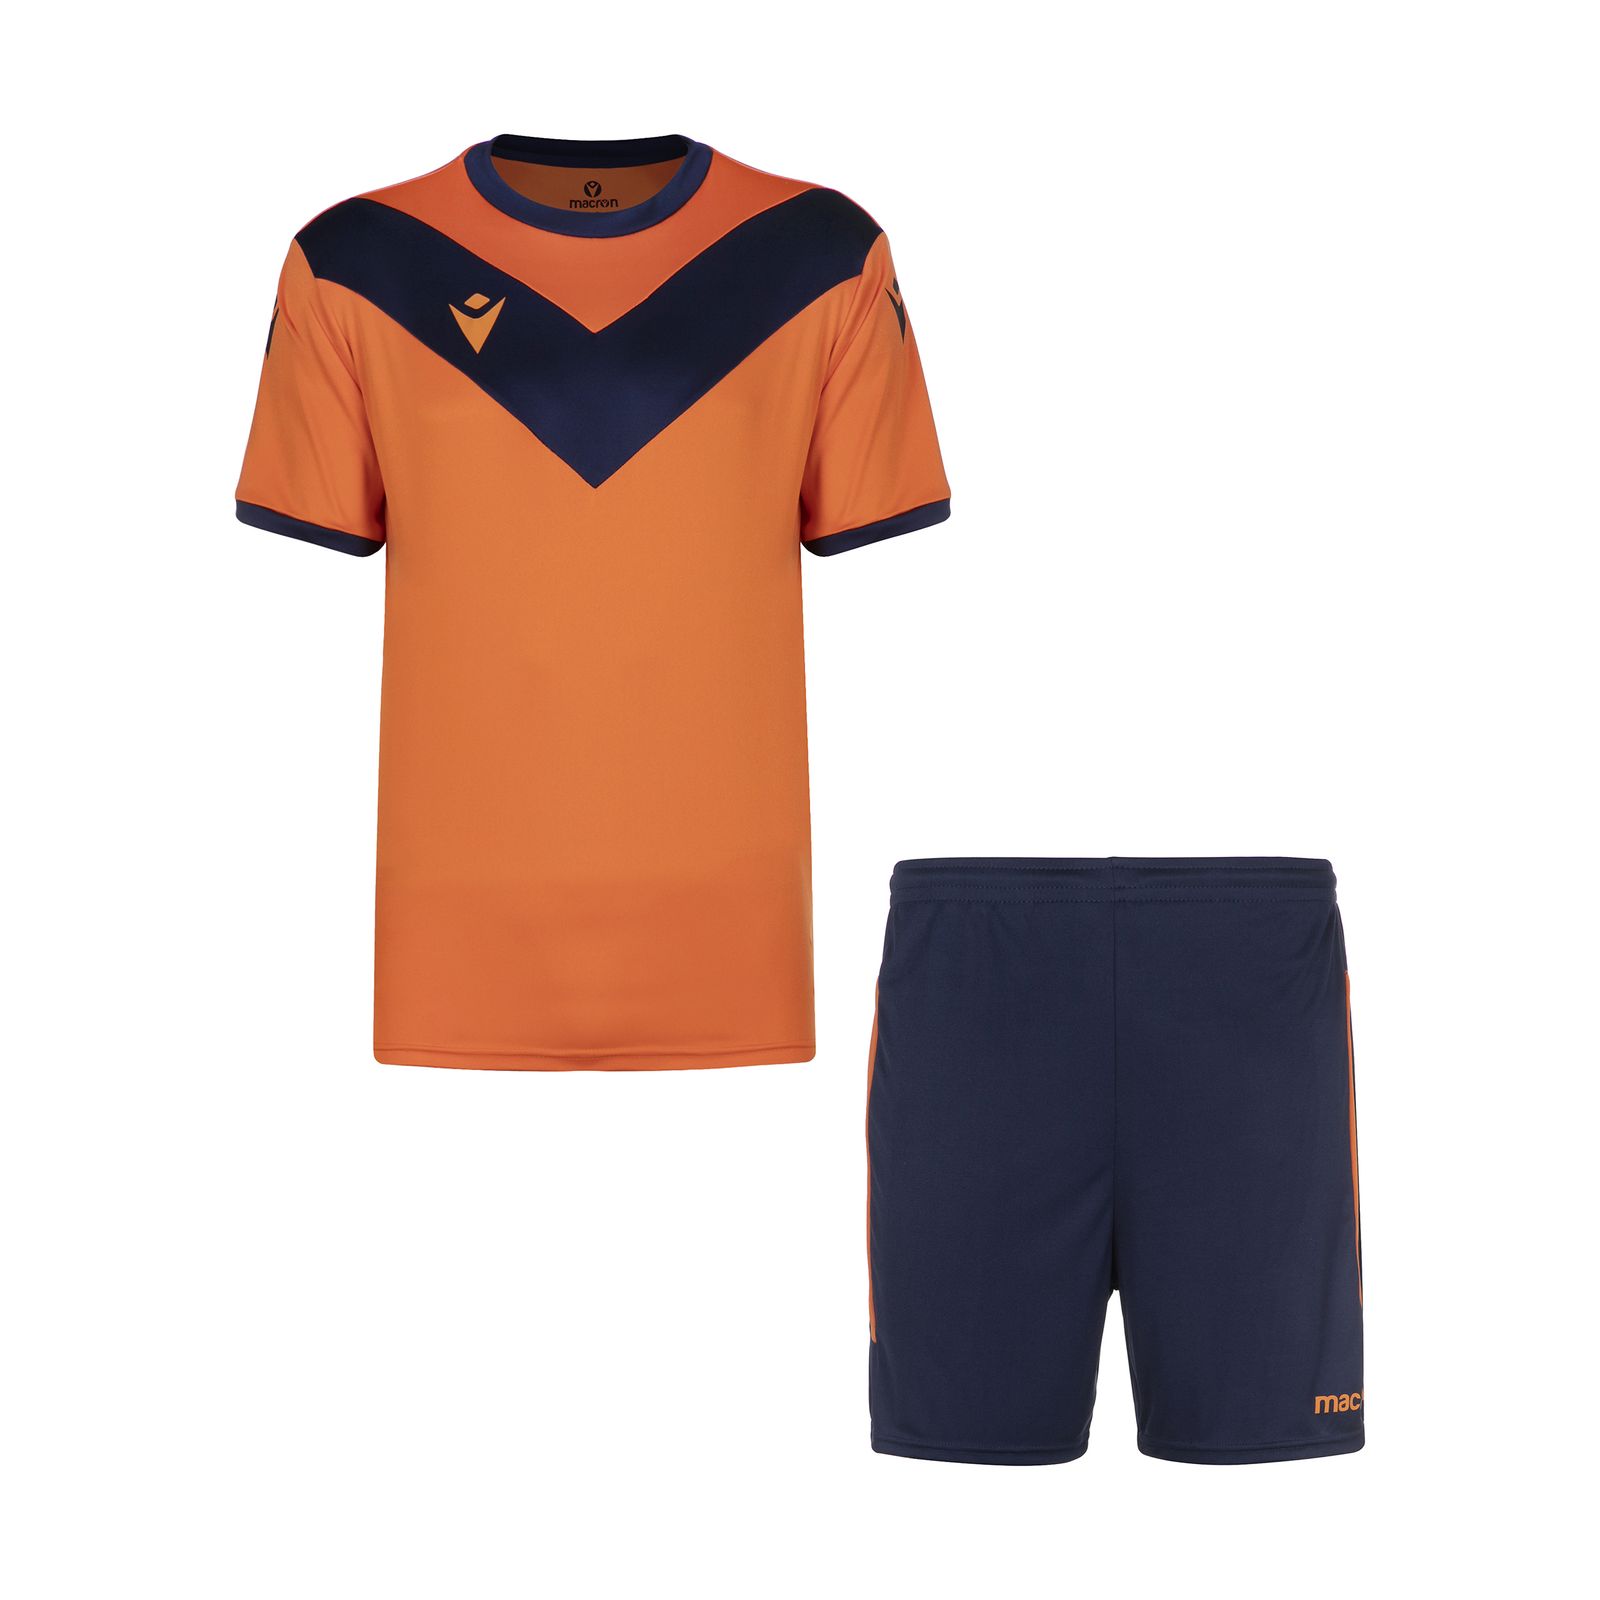 ست پیراهن و شورت ورزشی مردانه مکرون مدل پالرمو رنگ نارنجی  -  - 1